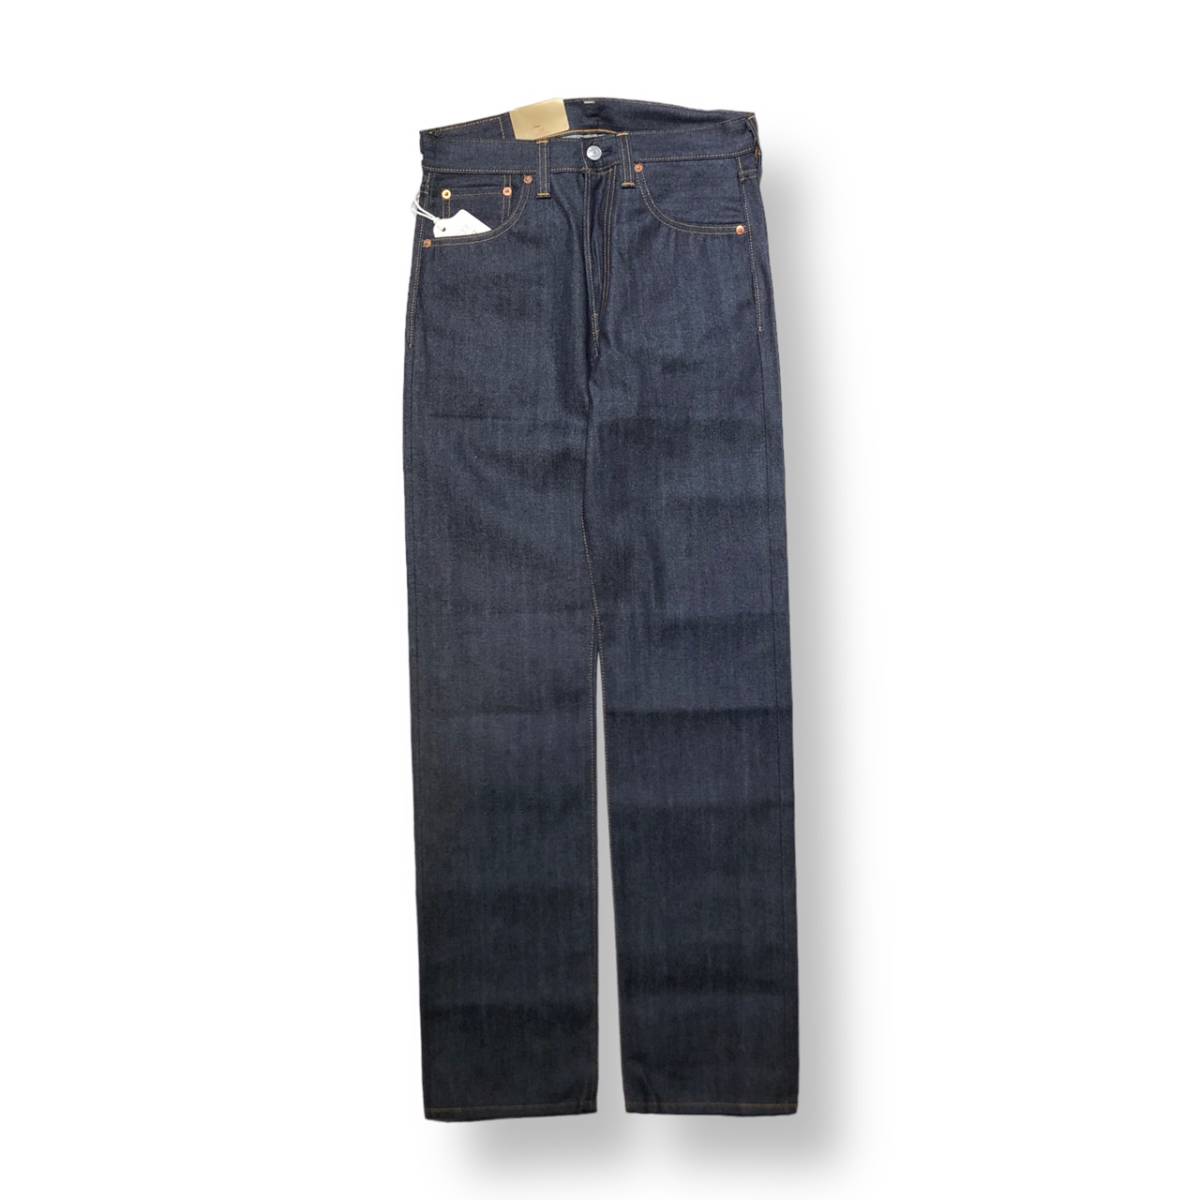 LEVI’S VINTAGE CLOTHING 501XX denim jeans 1947年モデル 47501-0224 デニム ジーンズ W30 リーバイス ビンテージクロージング